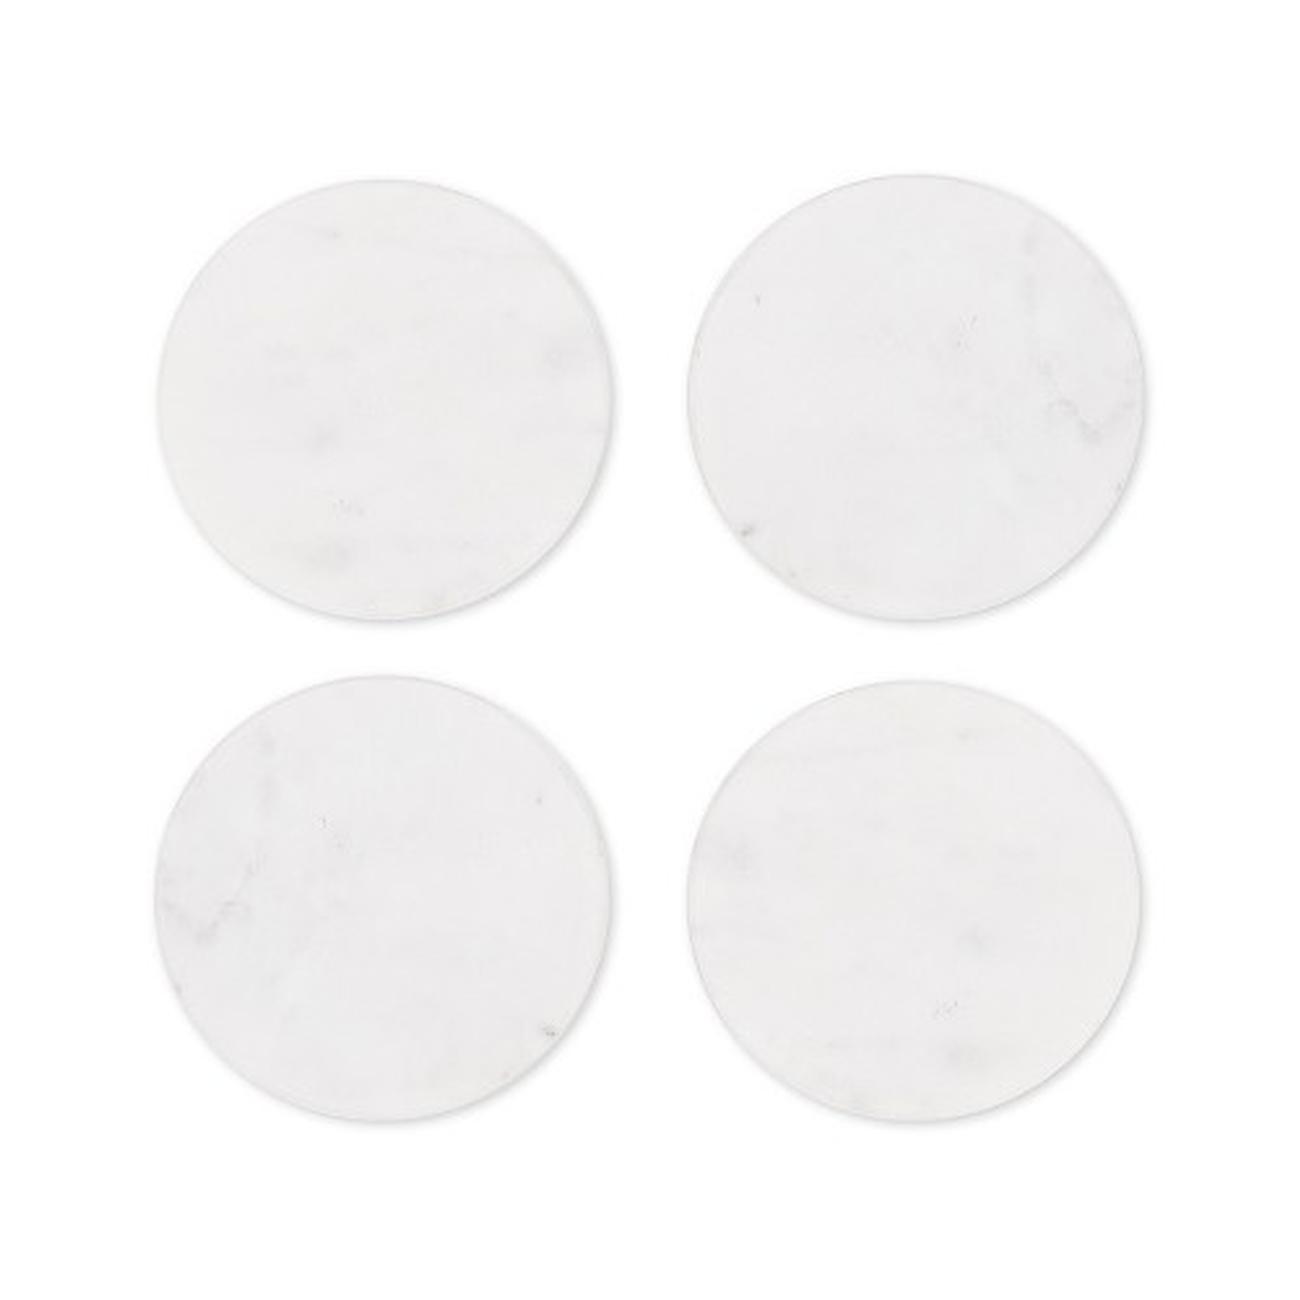 garden-trading-white-marble-coasters-round-4-piece-set - Garden Trading Set of 4 White Marble Coasters